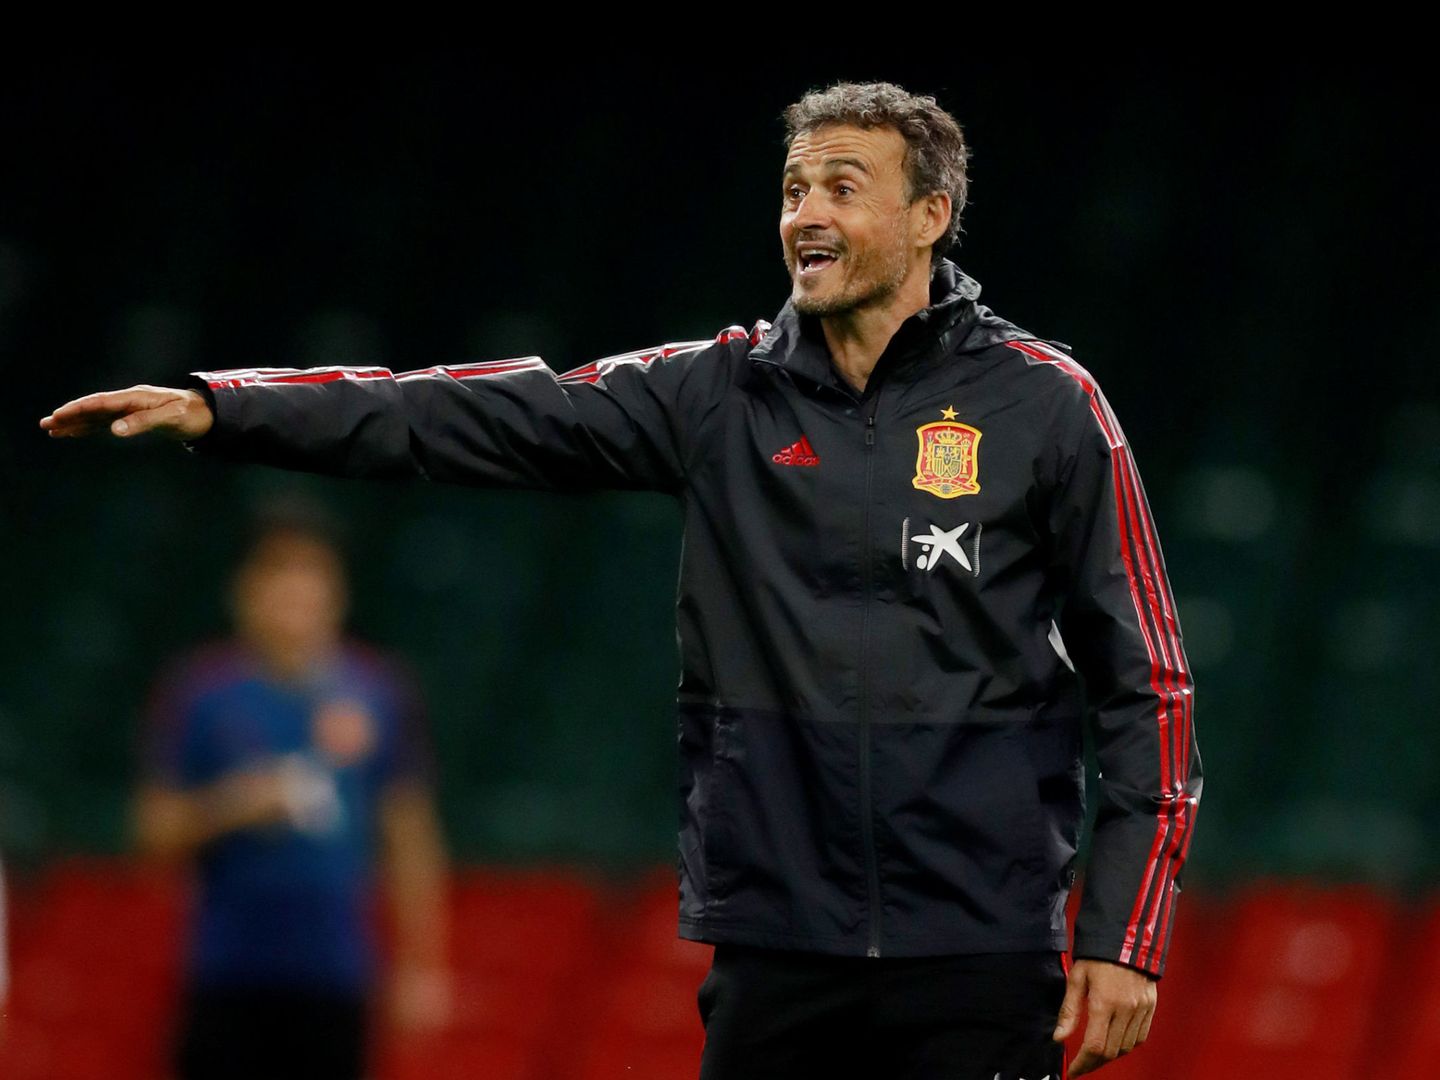 Al grupo que está formando Luis Enrique quizás no le haga falta un delantero como Diego Costa. (Reuters)